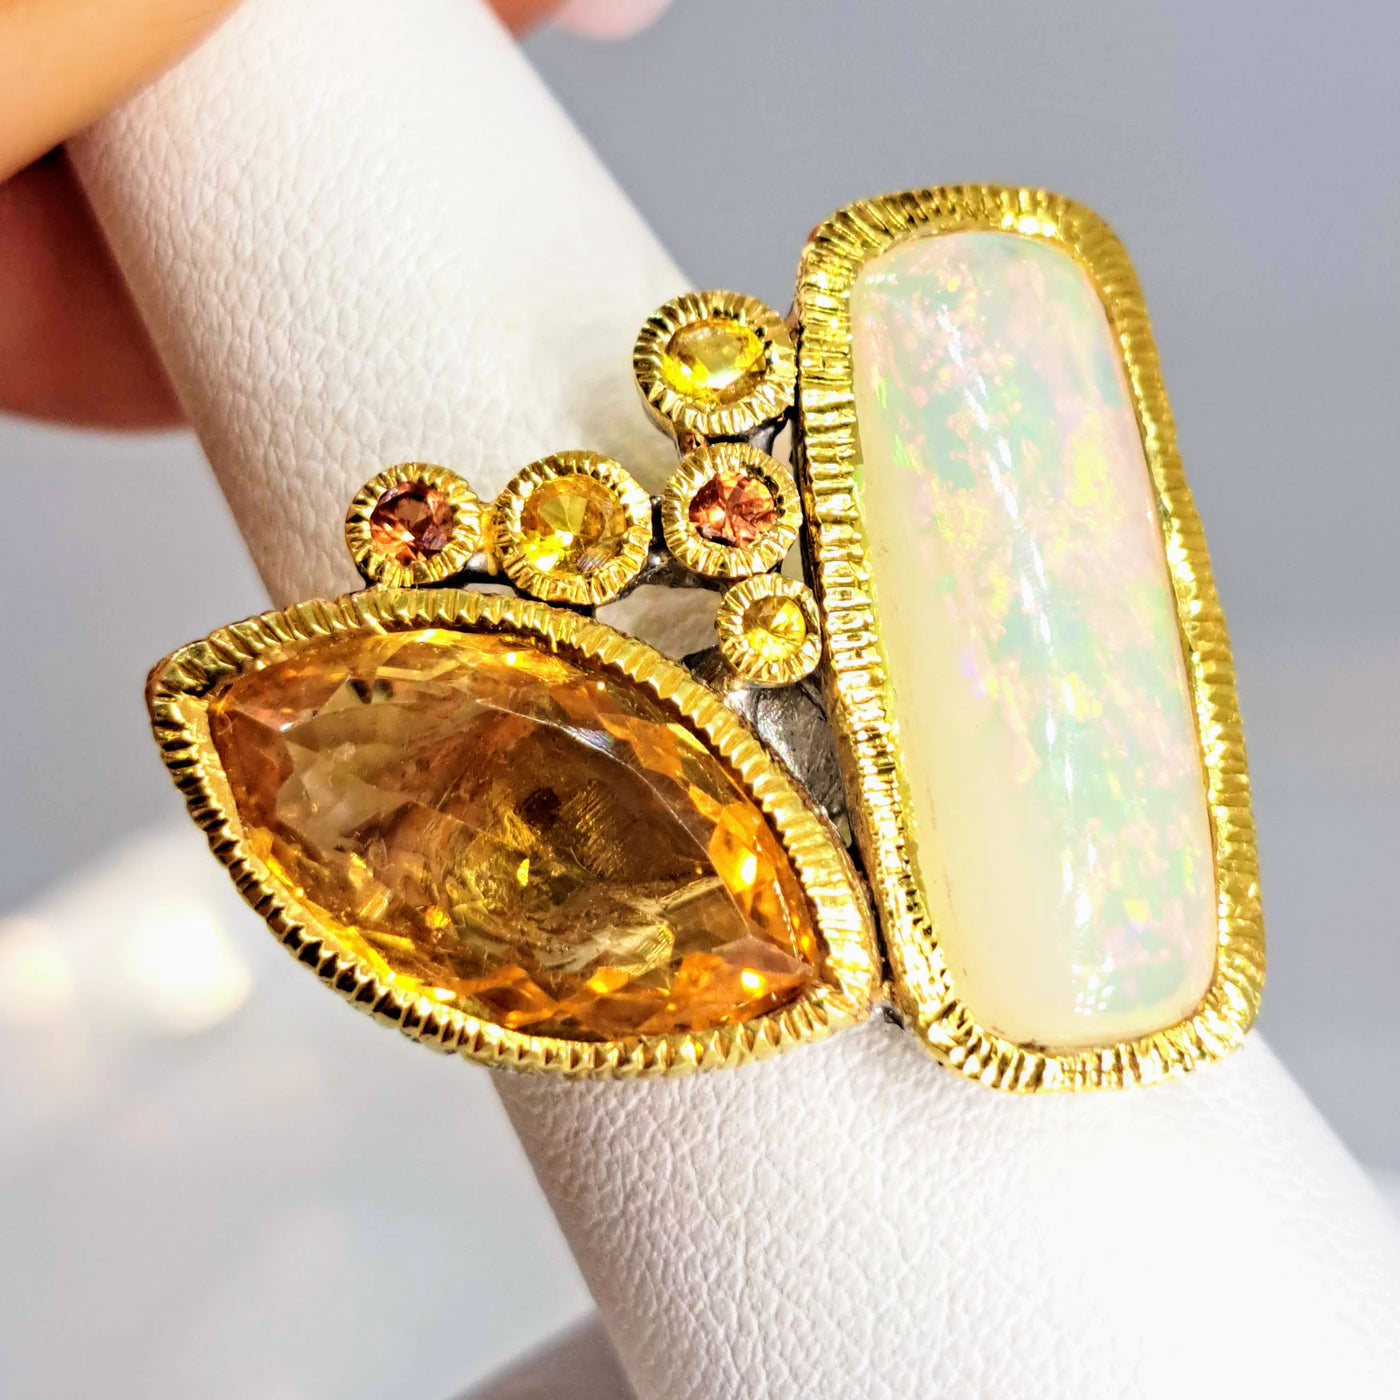 "Honey Dipper" Sz 9 Ring - Opal, Citrine, Sapphire, 18K Gold Sterling